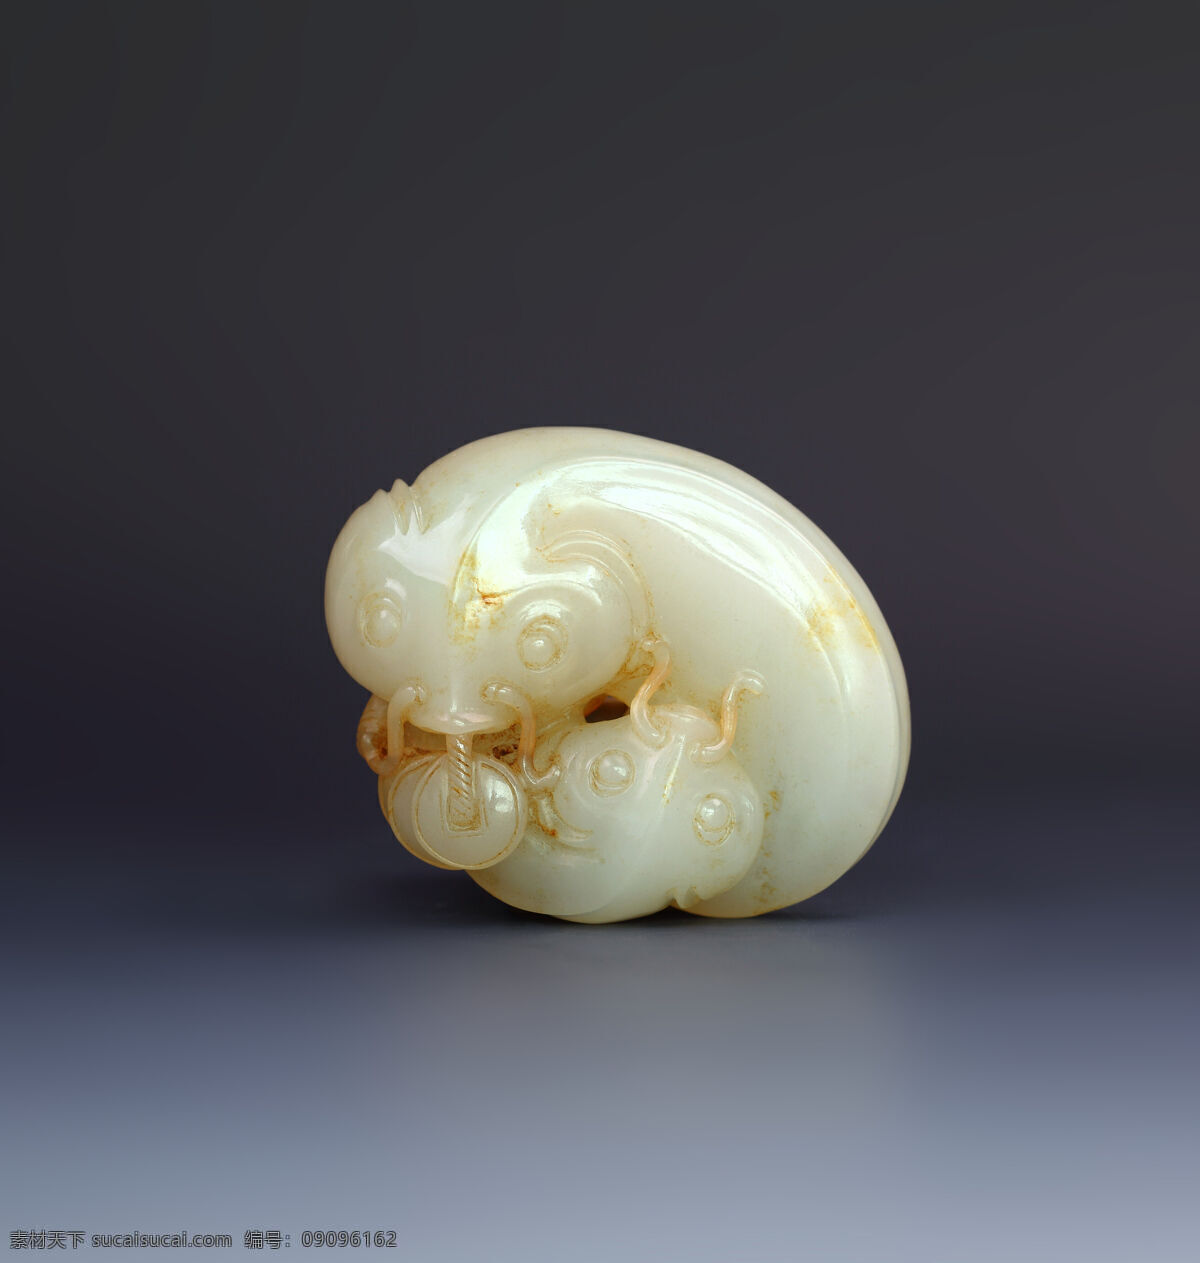 玉器 白玉 年年有余 挂件 玉 鱼 玉雕 玉石 石雕 收藏 古董 宝贝 价值 和田玉 青玉 传统文化 文化艺术